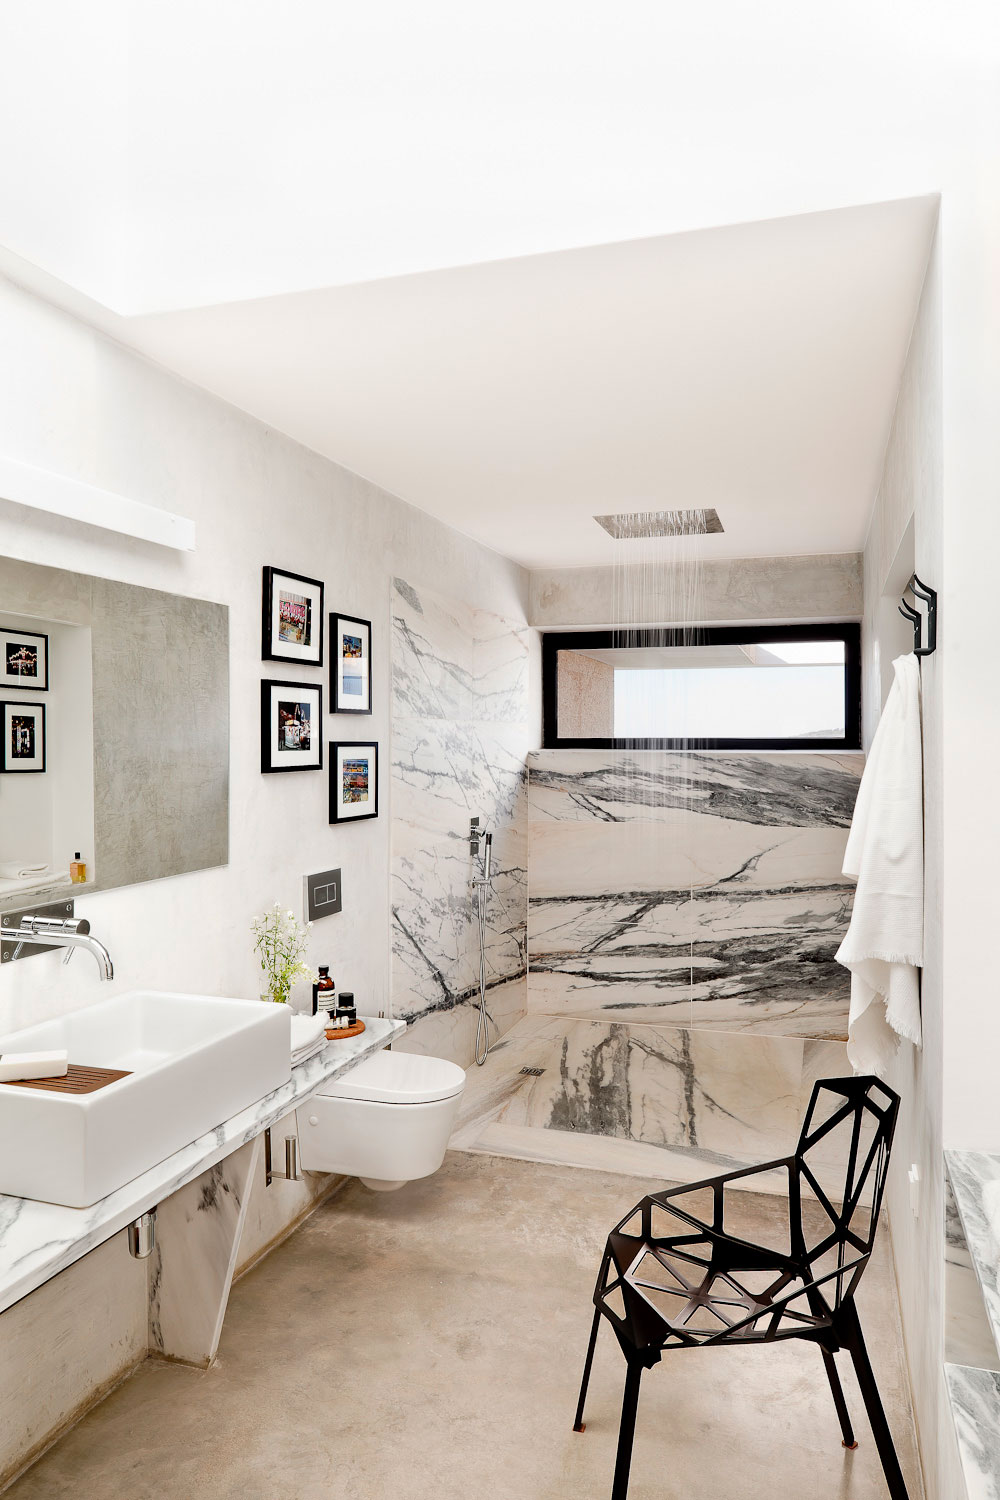 Maison & Demeure - Photos : 25+ meubles-lavabos stylés - Maison & Demeure